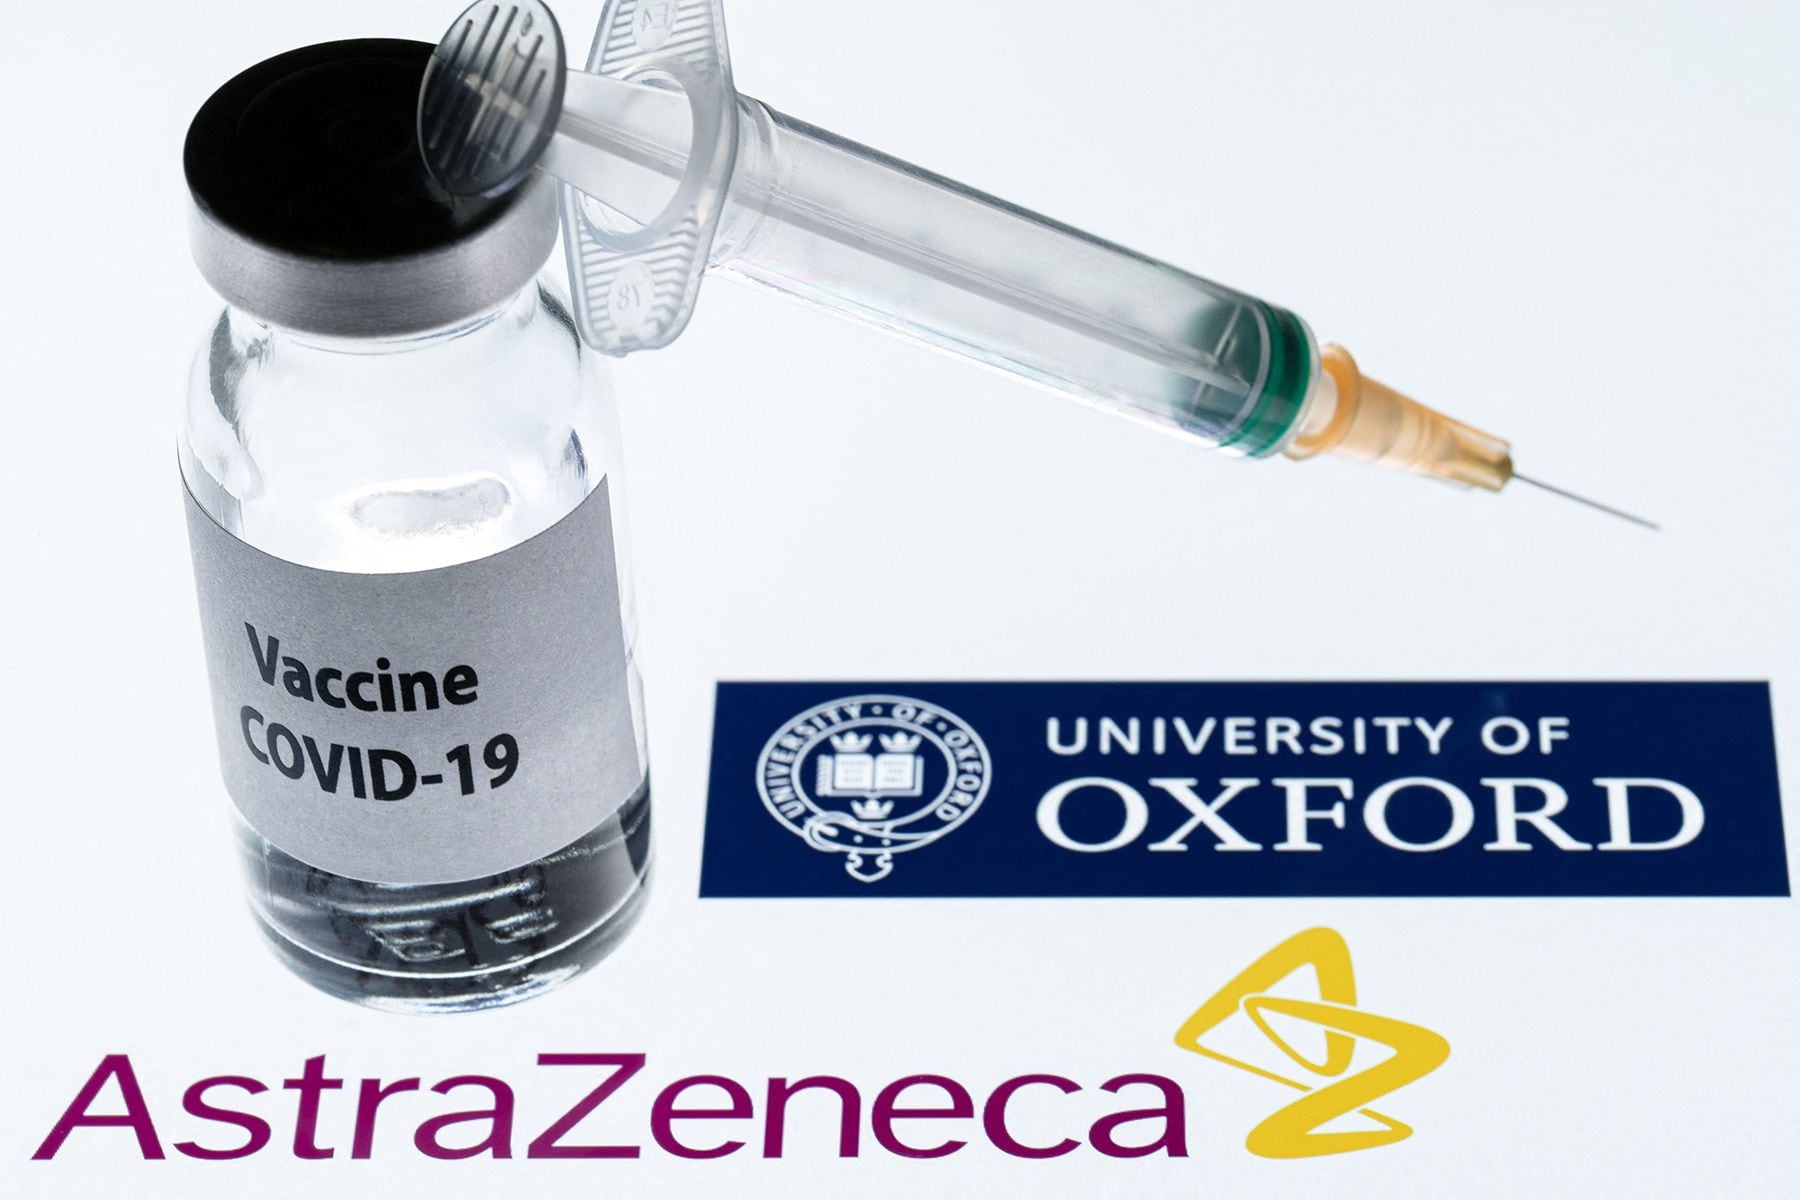 AstraZeneca trata de recuperar la confianza en su vacuna con nuevos datos, mientras la Unión Europea posterga el análisis de la rusa Sputnik V